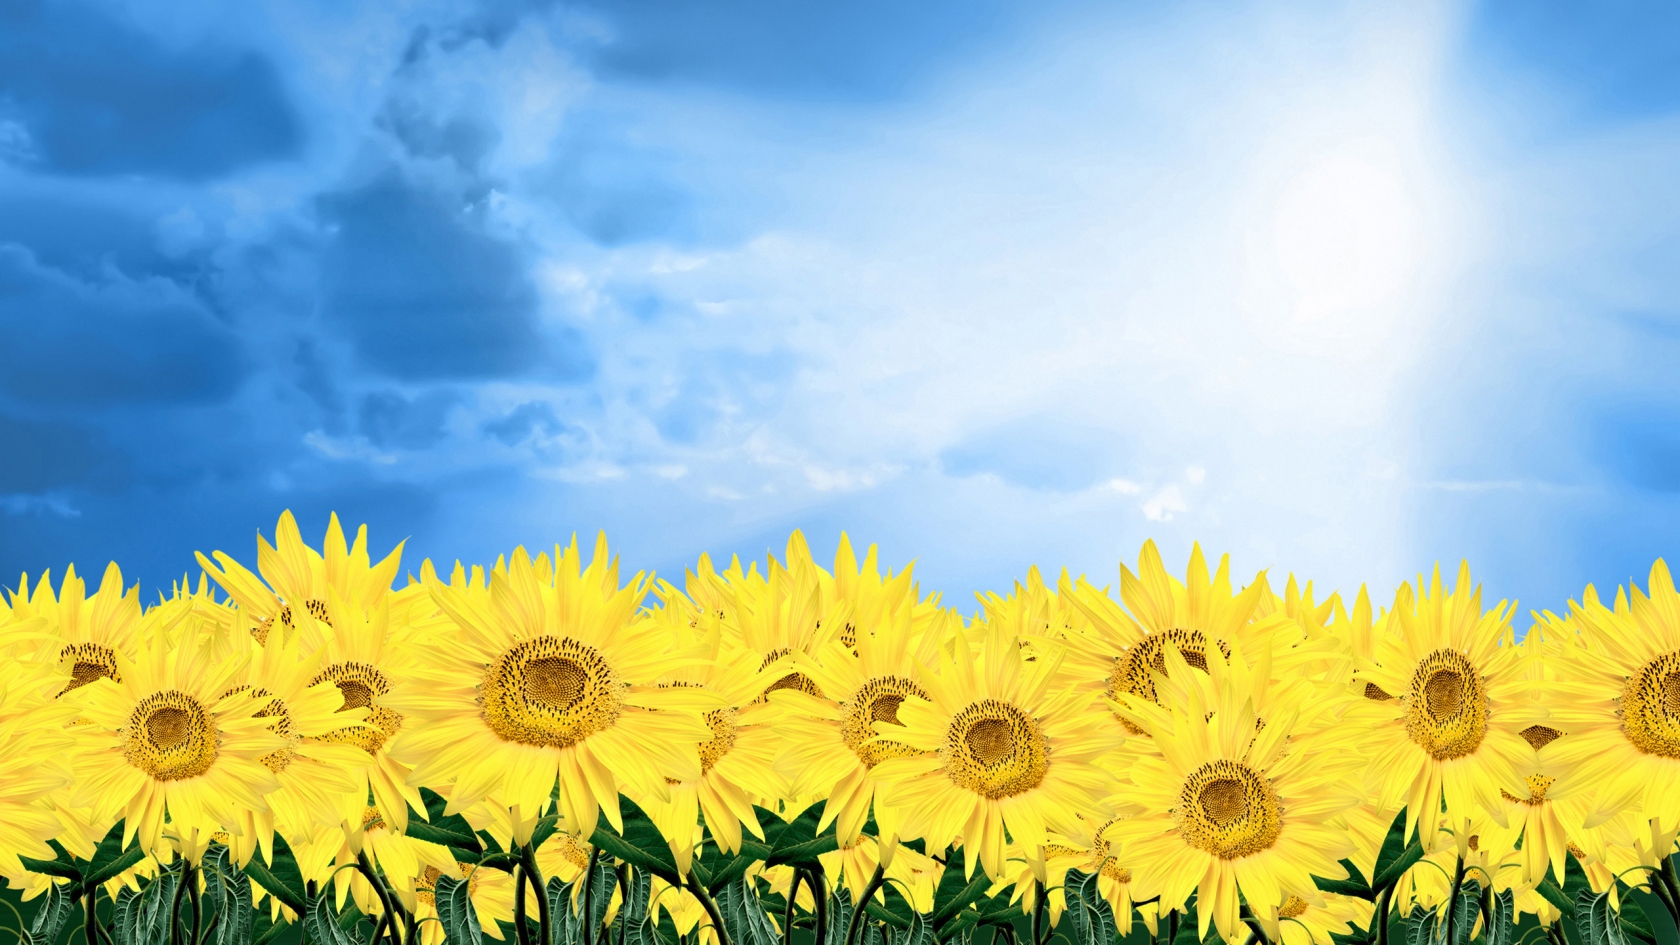 Summer Sunflowers for 1680 x 945 HDTV resolution